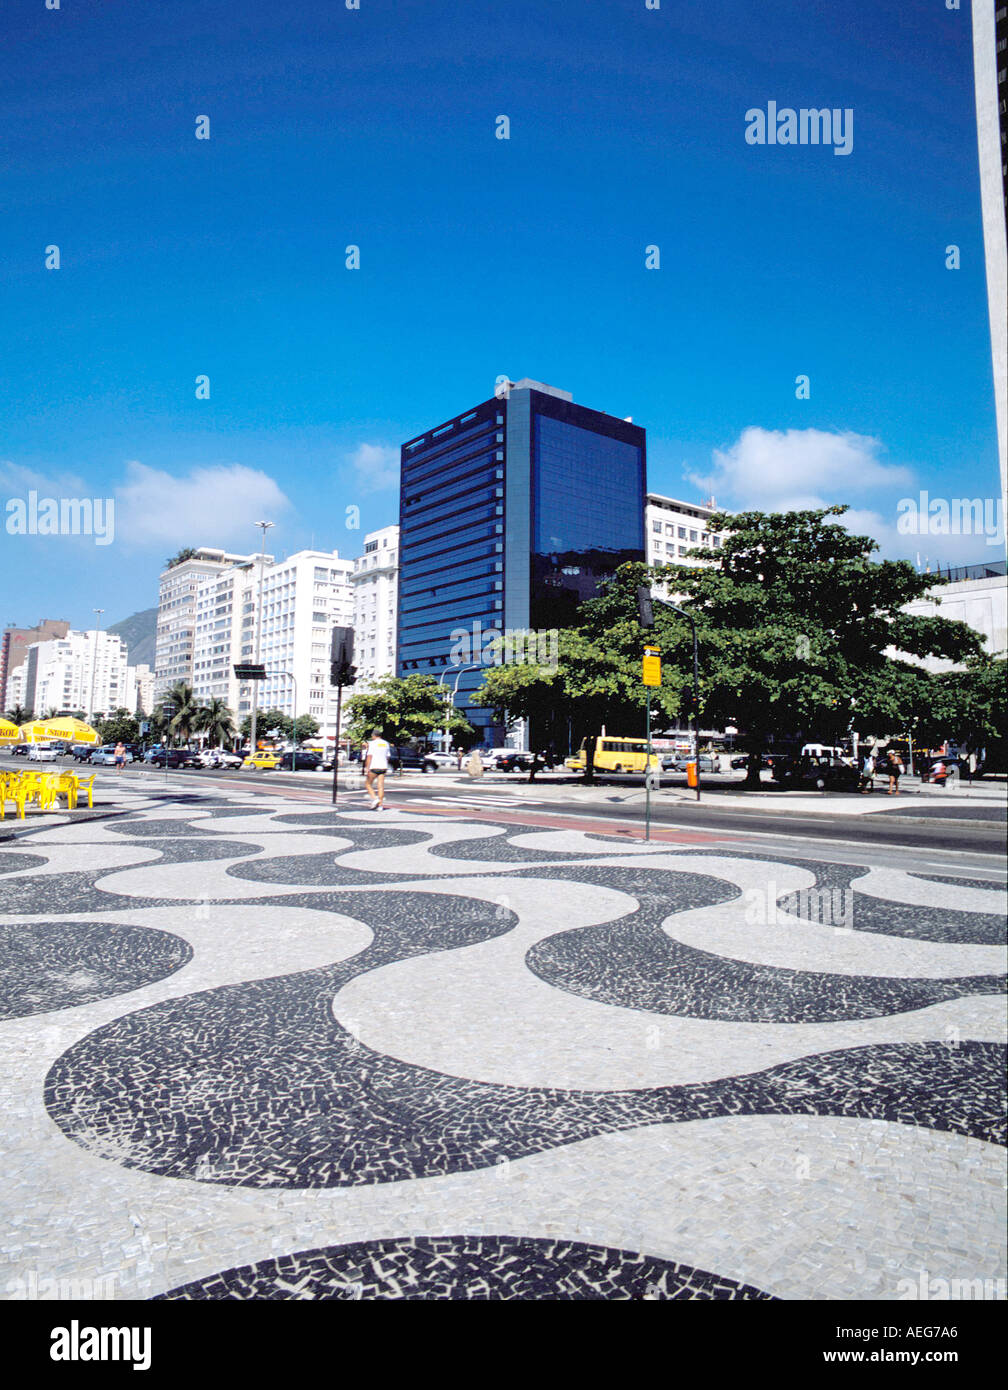 Copacabana Brésil Voyage calcadao bâtiments urbains façades façade caractéristique de conception de trottoir ensoleillé voyage promenade Banque D'Images